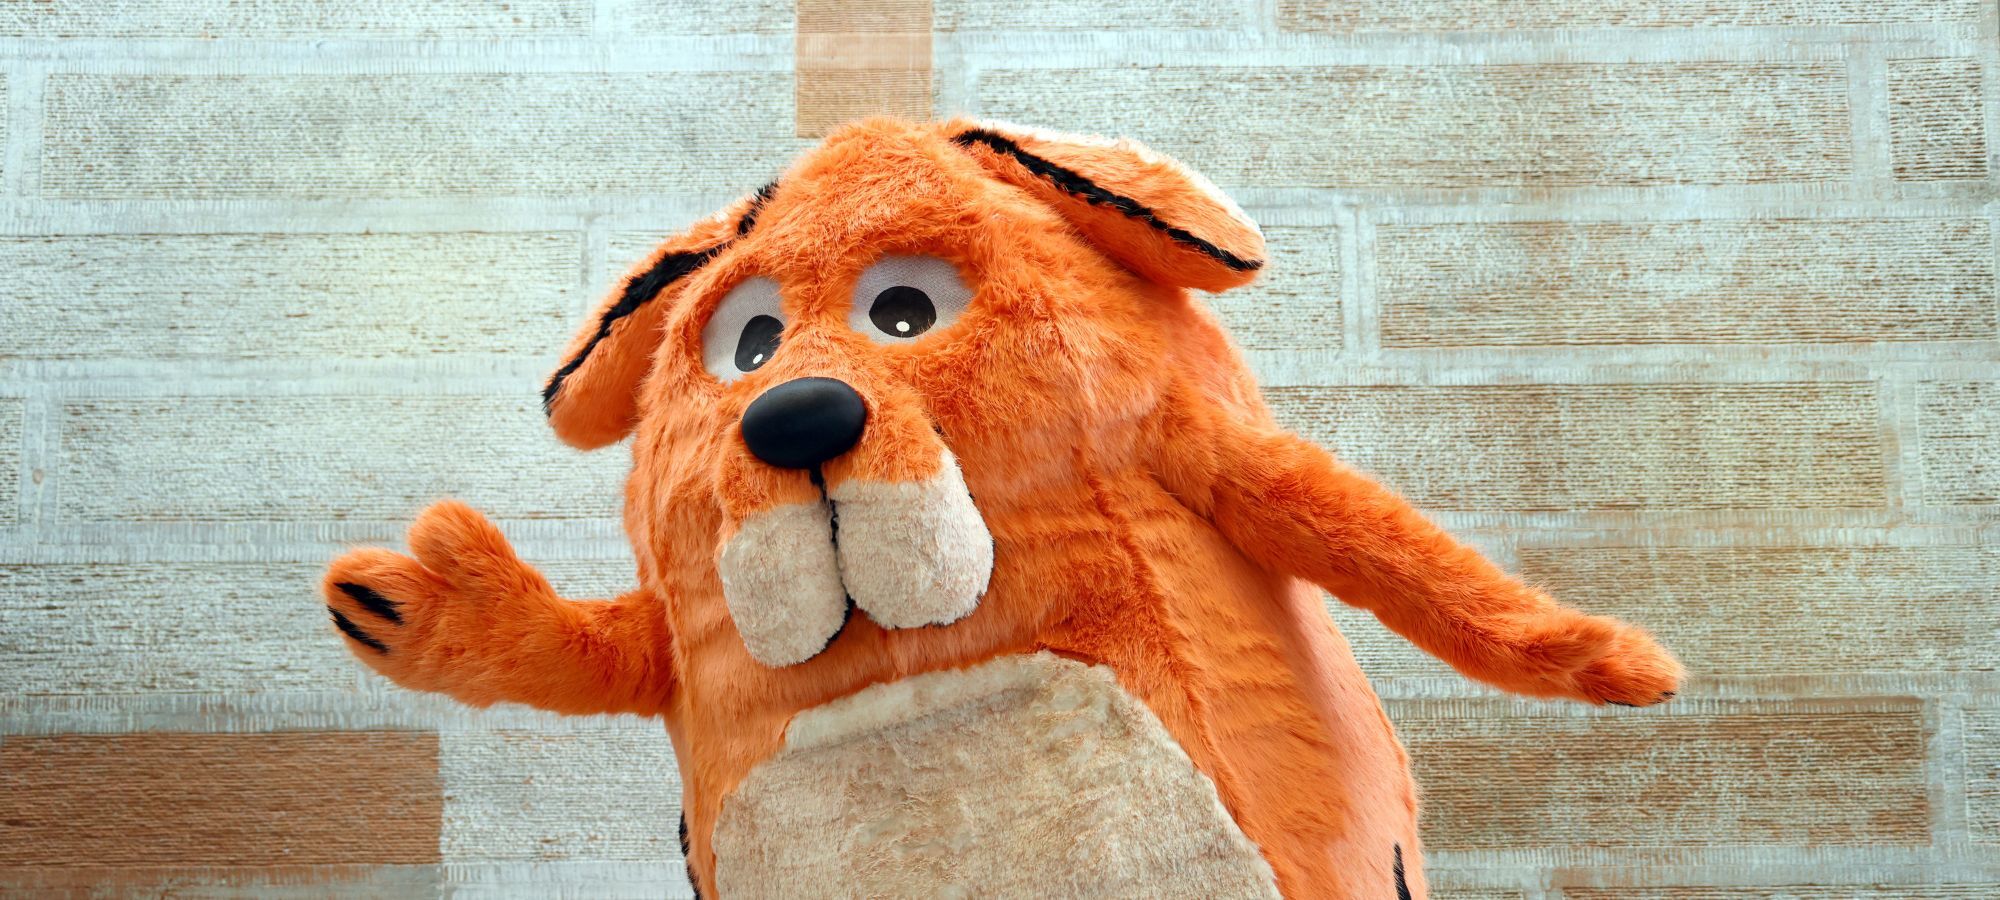 Portrait of Big DoG, a large orange dog mascot with floppy ears.